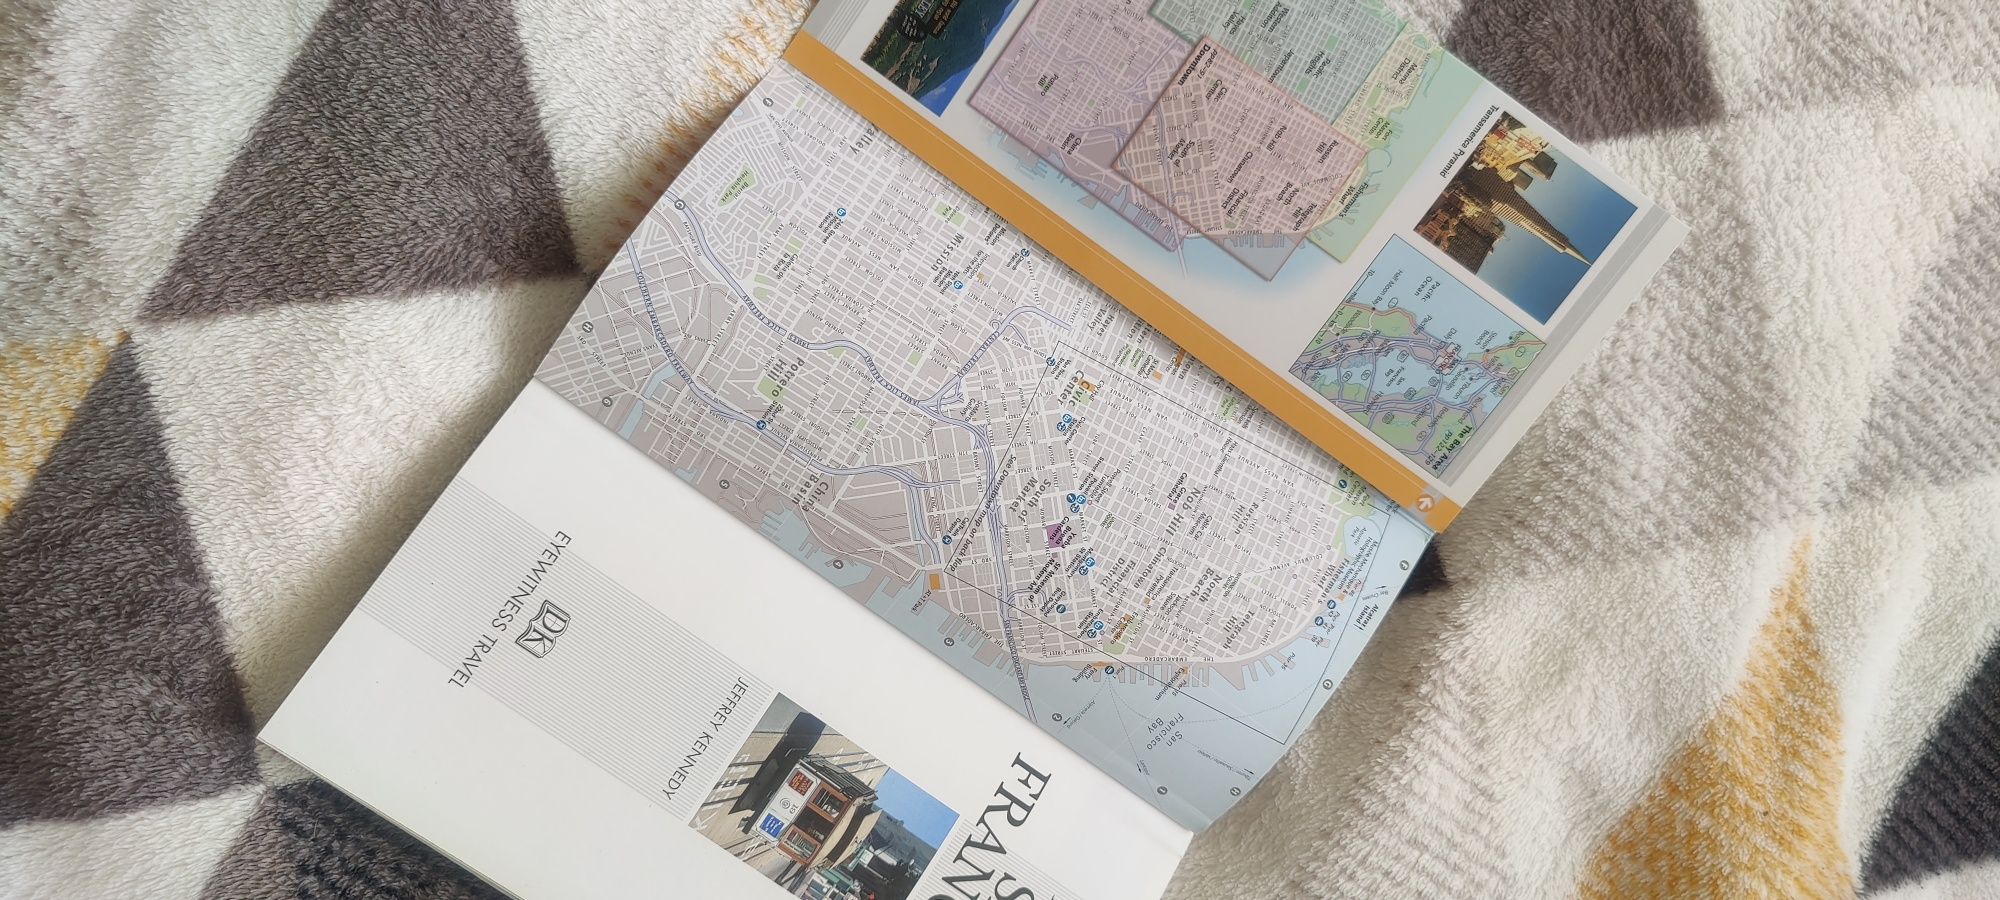 Przewodnik San Francisco Eyewitness Travel GUIDE, mapy angielski